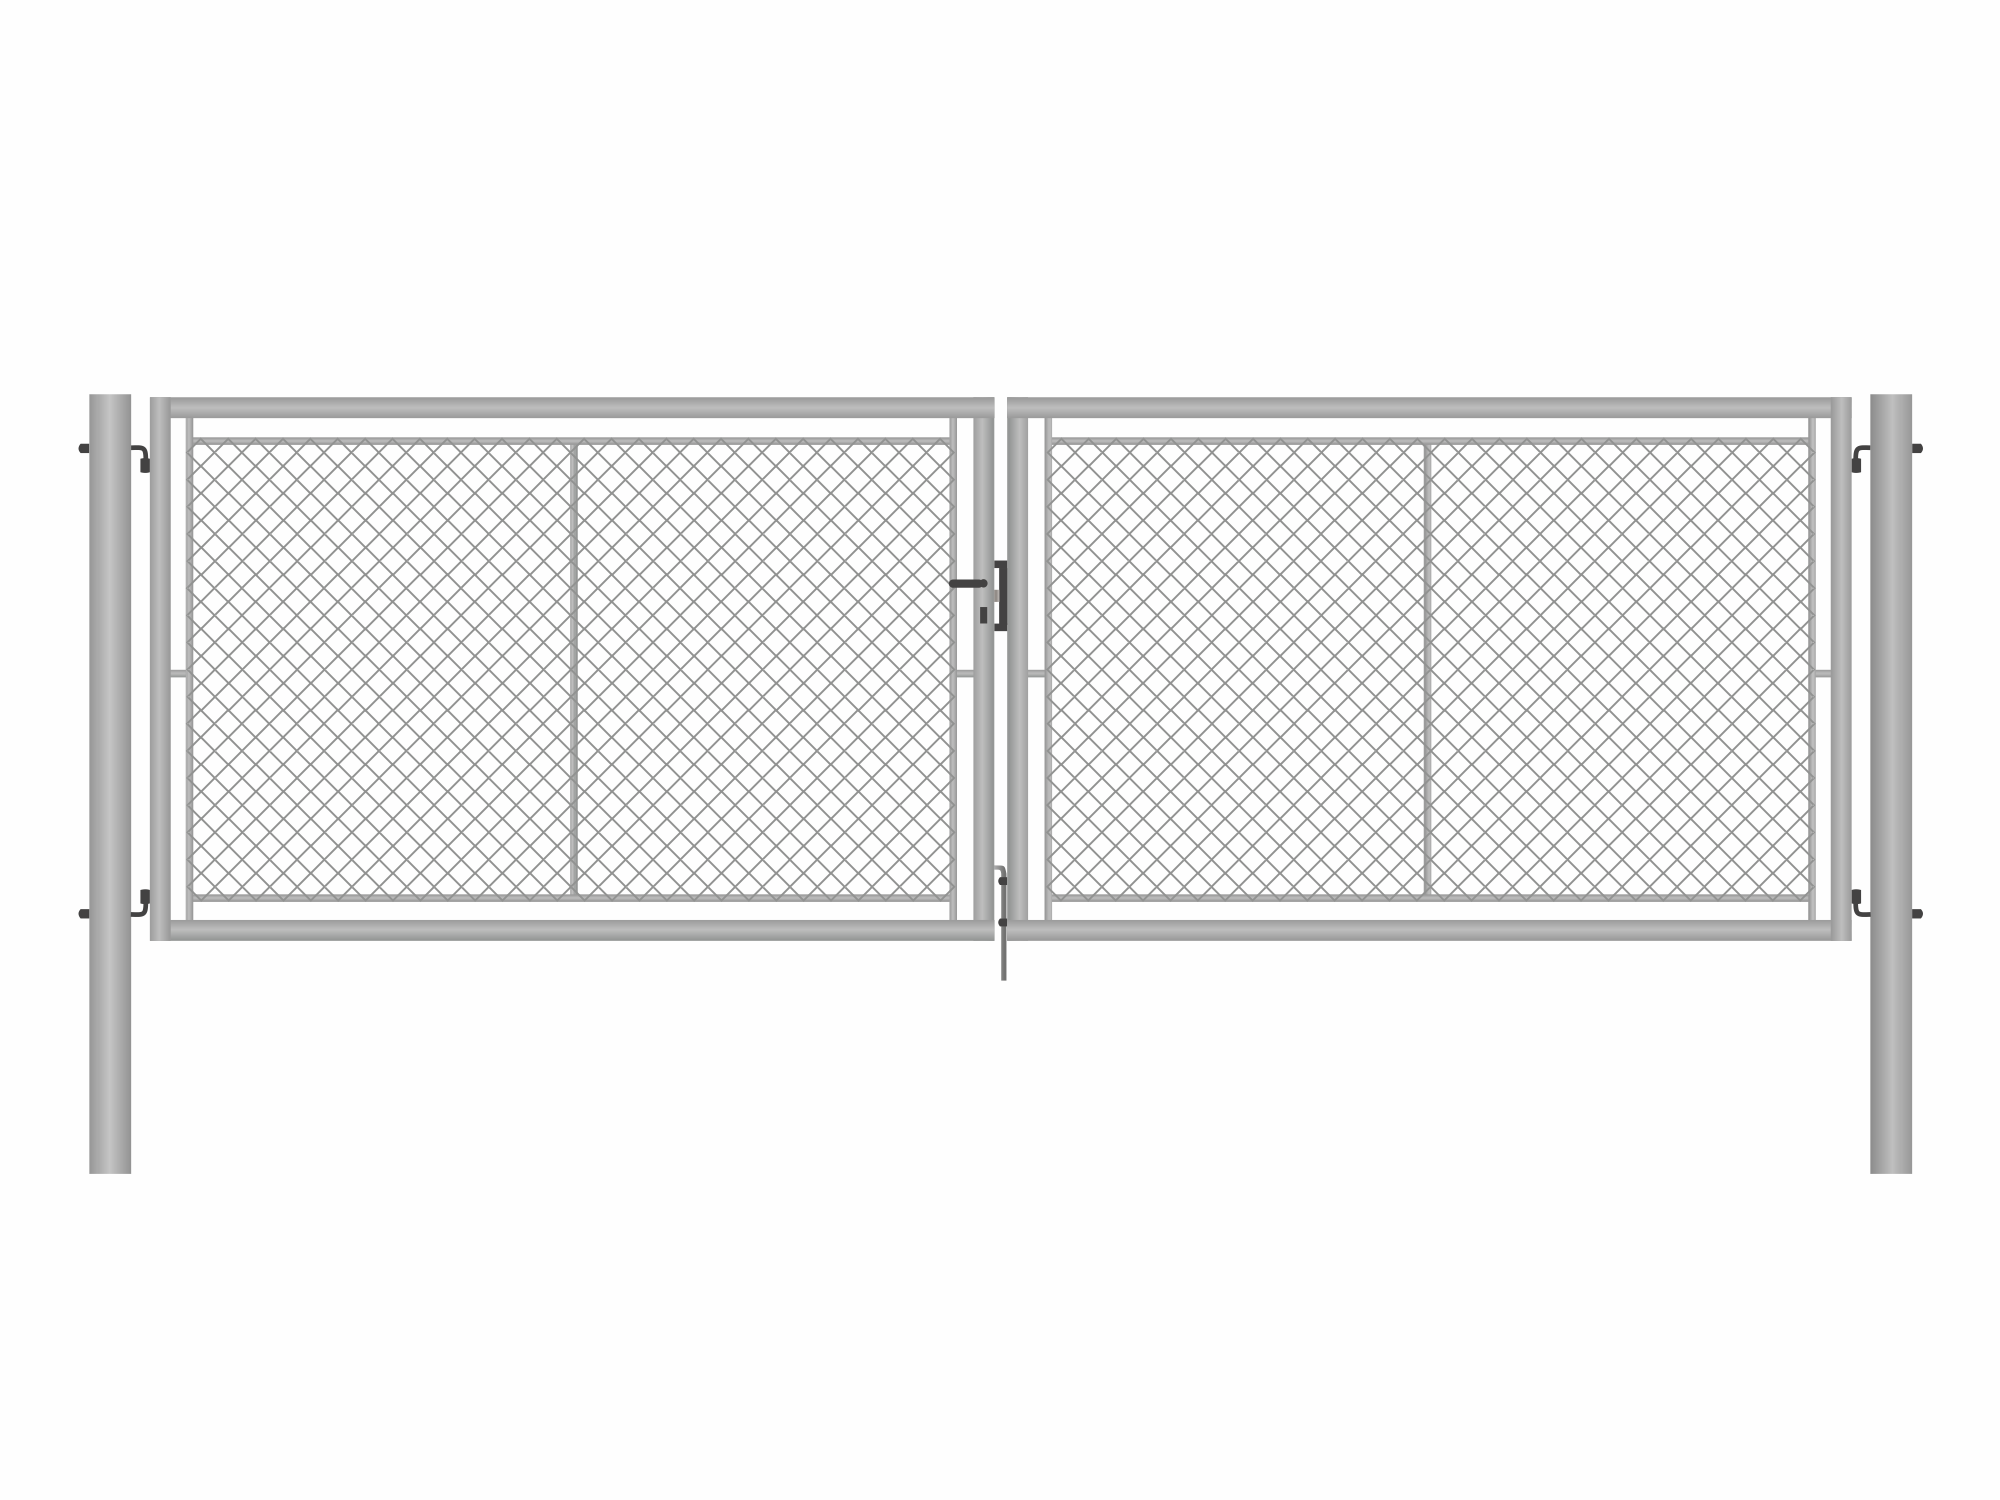 Brána zahradní dvoukřídlá pozink, výška 155 x 400 cm, FAB, s výplní klasického pletiva PLOTY Sklad5 9876 535